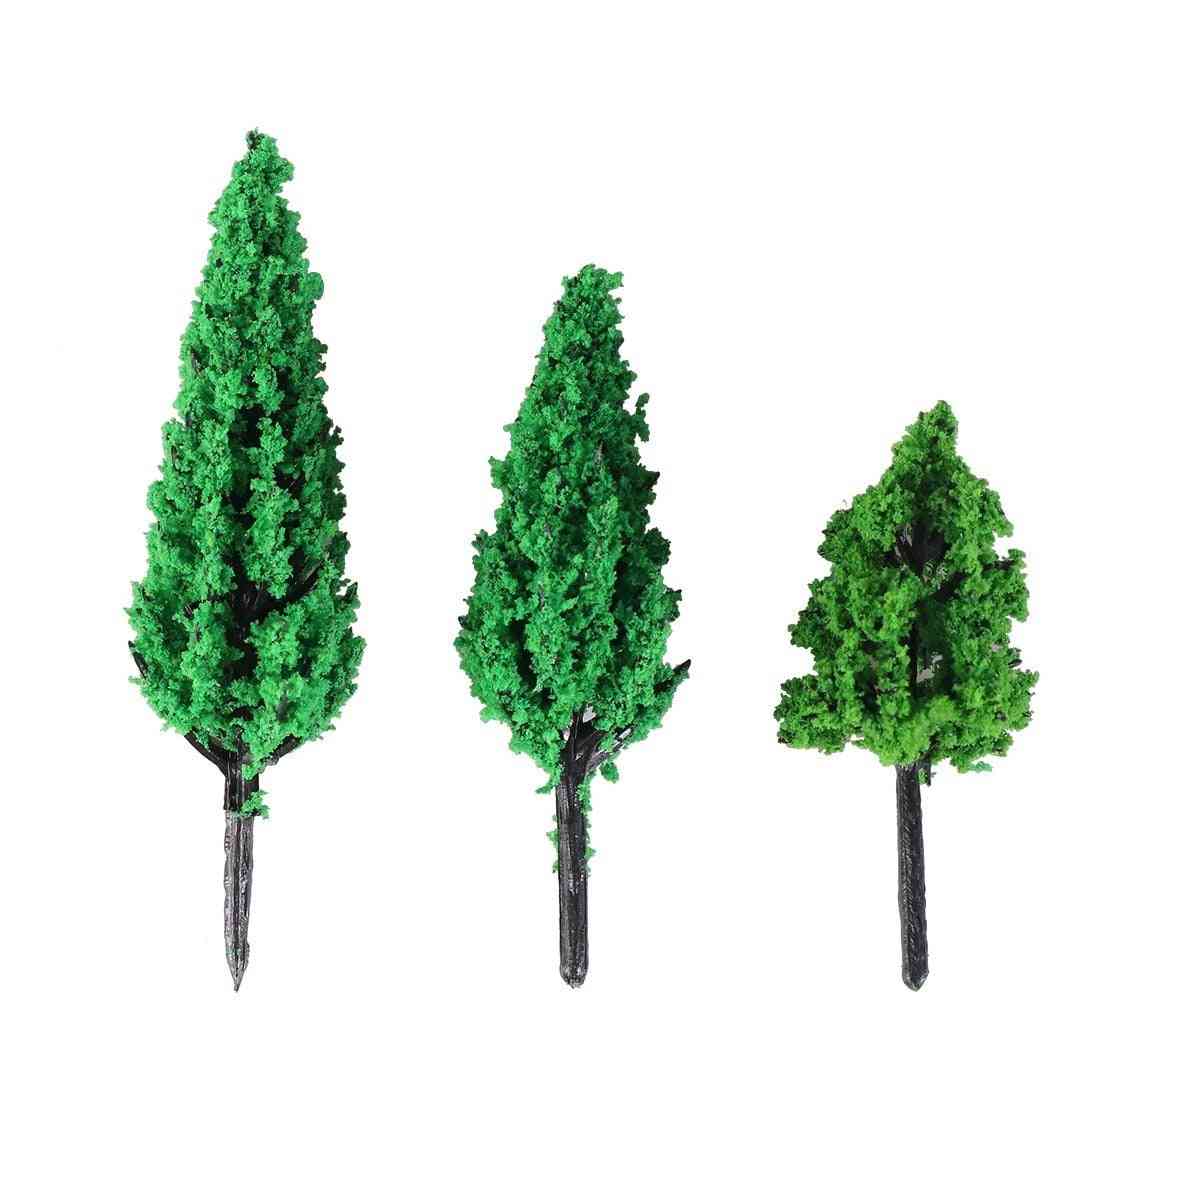 Stromy park borovice topol les pagoda - miniaturní dioráma mikro rozložení scenérie dekorace